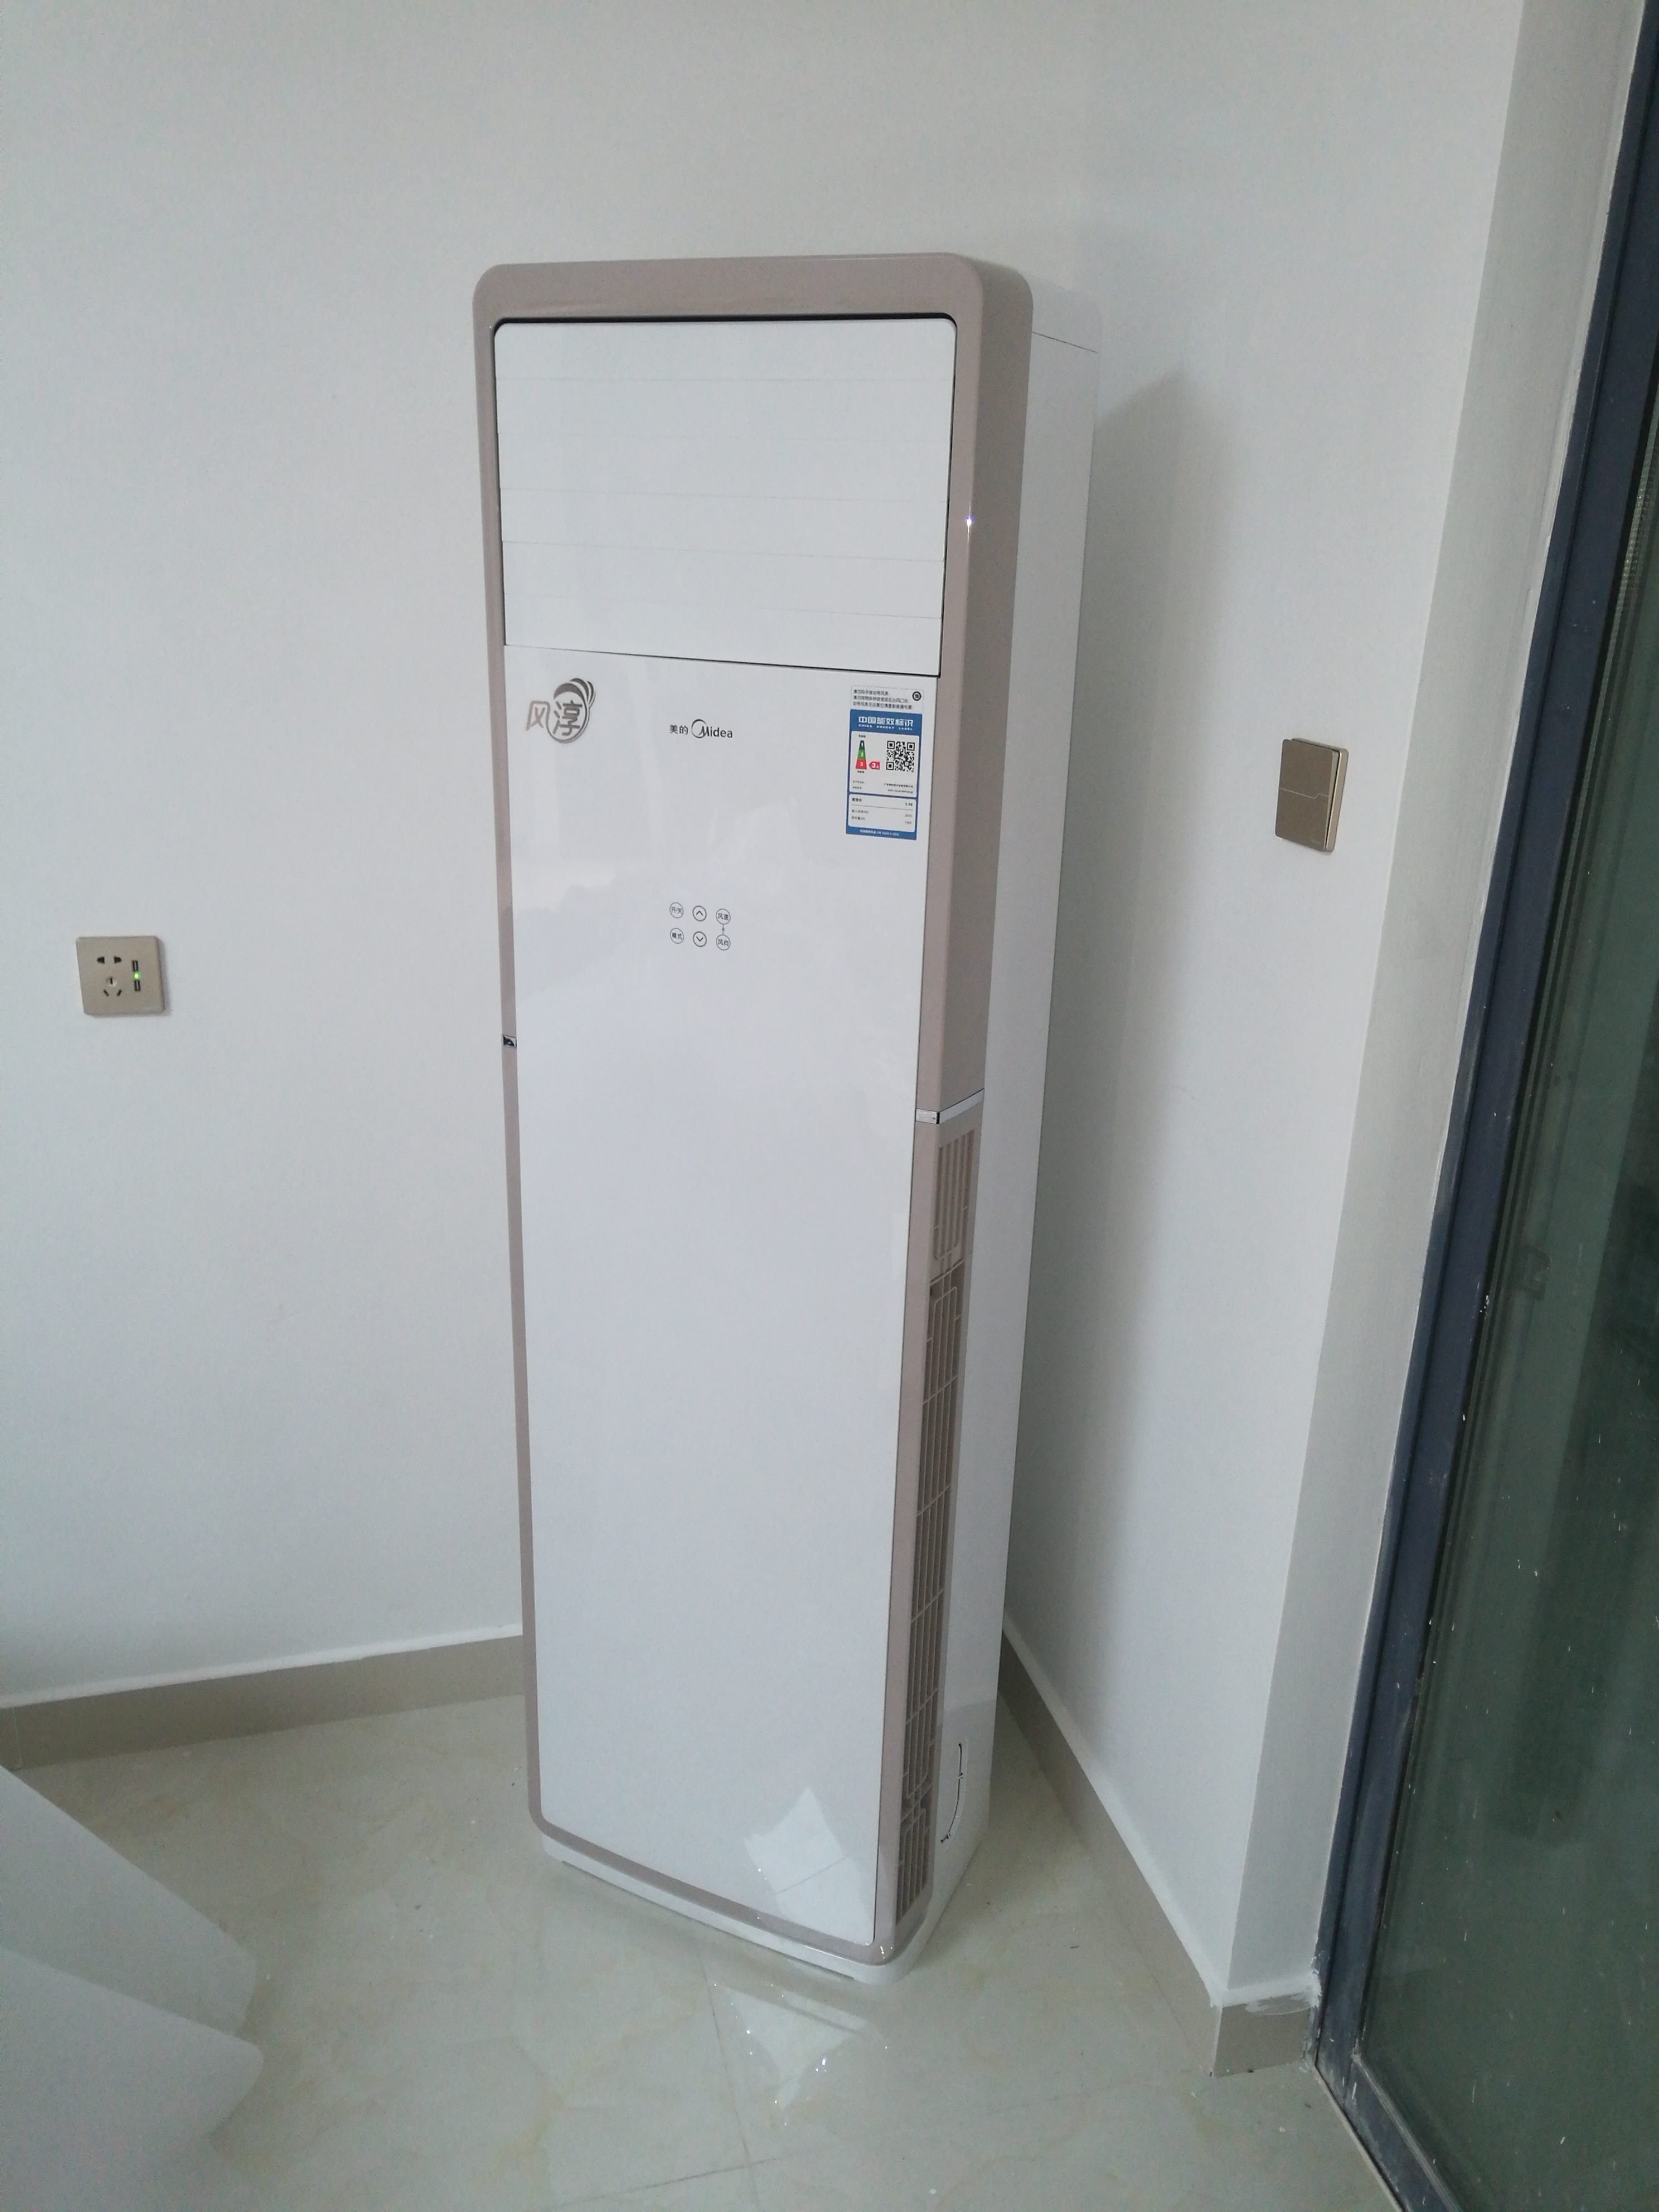 商居两用 冷暖 客厅柜机 3级能效 自清洁 智能家用空调kfr-72lw/wpcd3